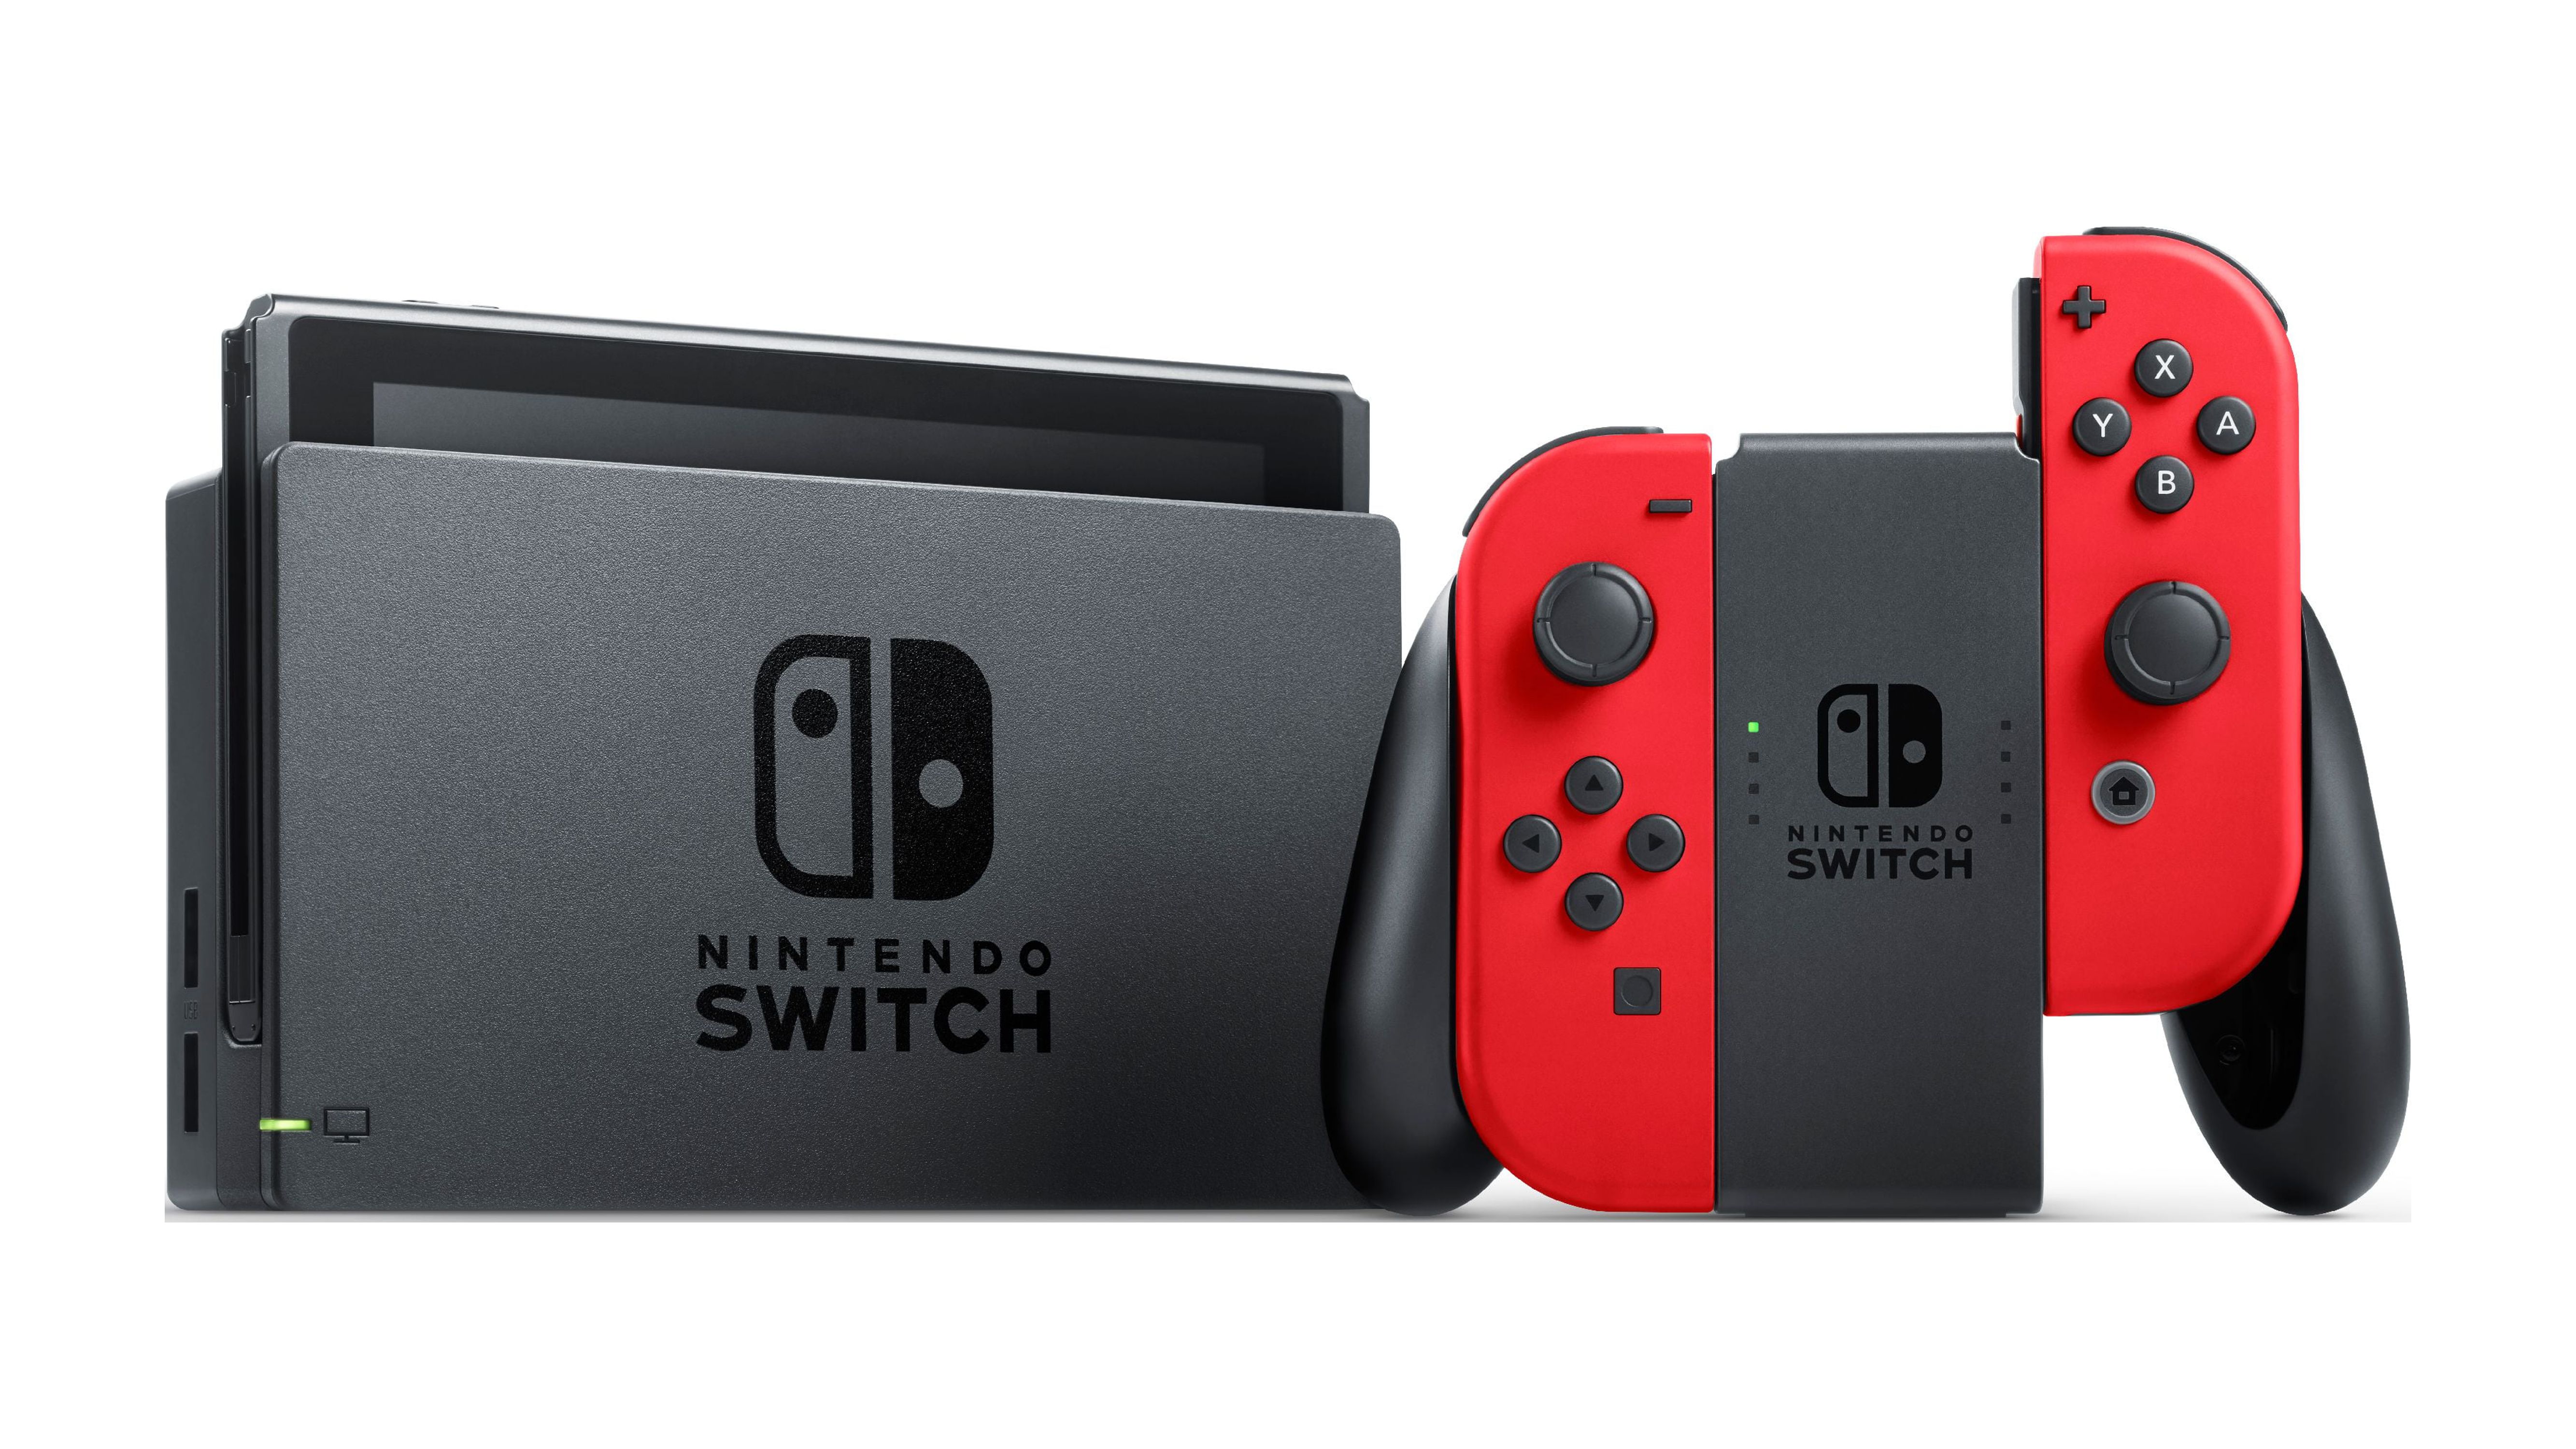 Nintendo Switch Bundle with Mario Red Joy-Con, $20 Nintendo eShop Credit, & Carrying Case - image 2 of 9